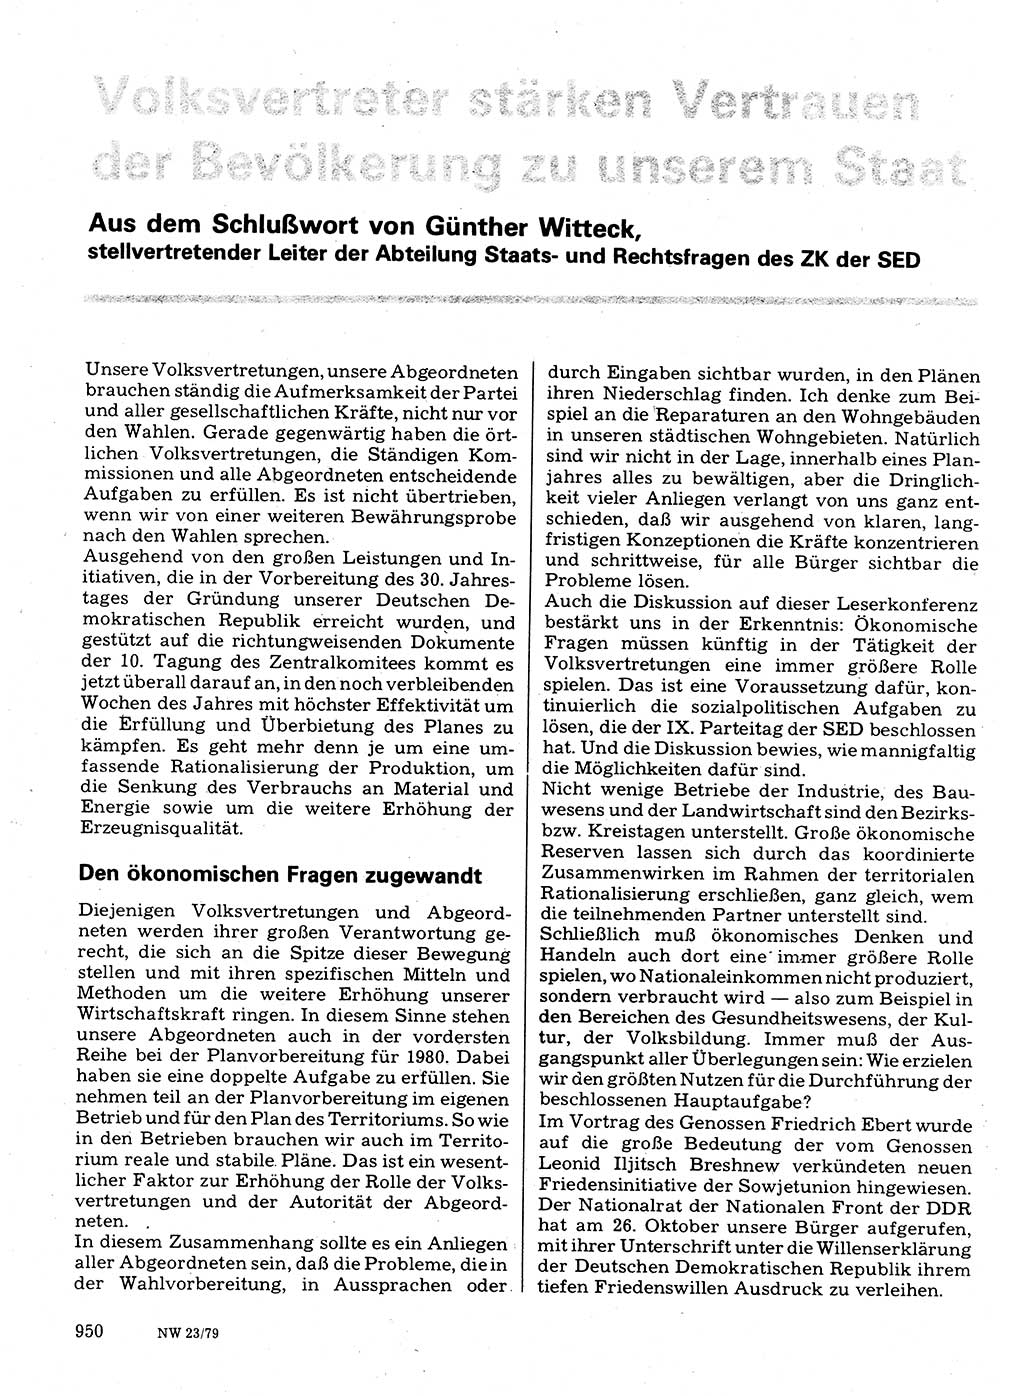 Neuer Weg (NW), Organ des Zentralkomitees (ZK) der SED (Sozialistische Einheitspartei Deutschlands) für Fragen des Parteilebens, 34. Jahrgang [Deutsche Demokratische Republik (DDR)] 1979, Seite 950 (NW ZK SED DDR 1979, S. 950)